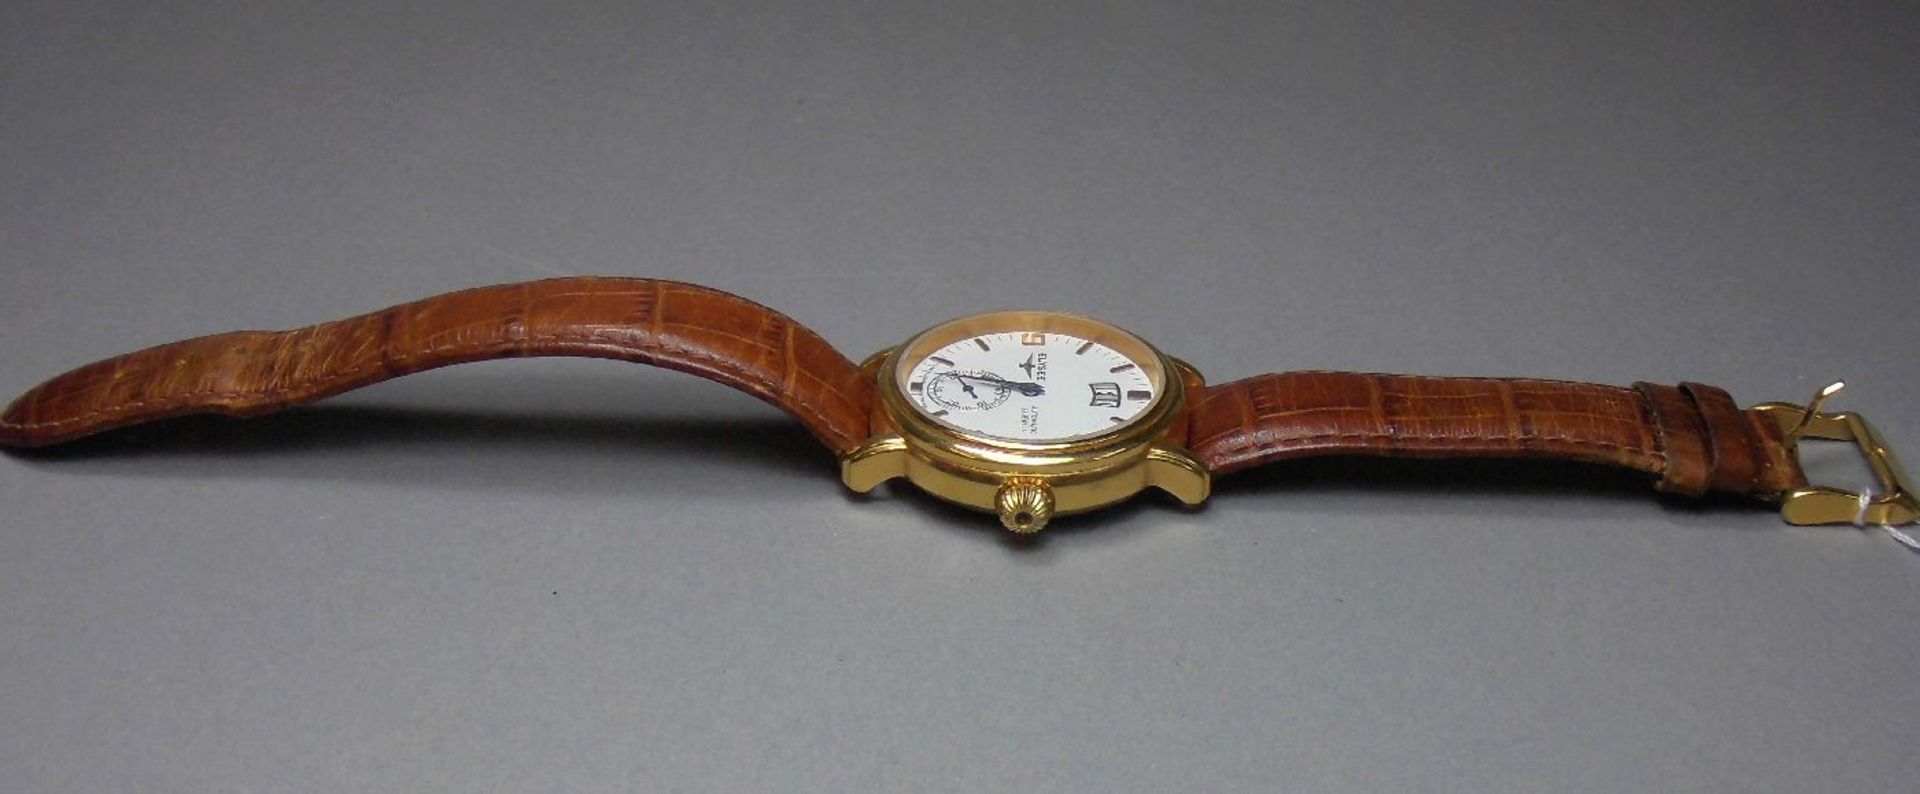 ARMBANDUHR / wristwatch, ELYSEE Uhren GmbH / Deutschland. Rundes goldfarbenes Edelstahlgehäuse mit - Image 5 of 7